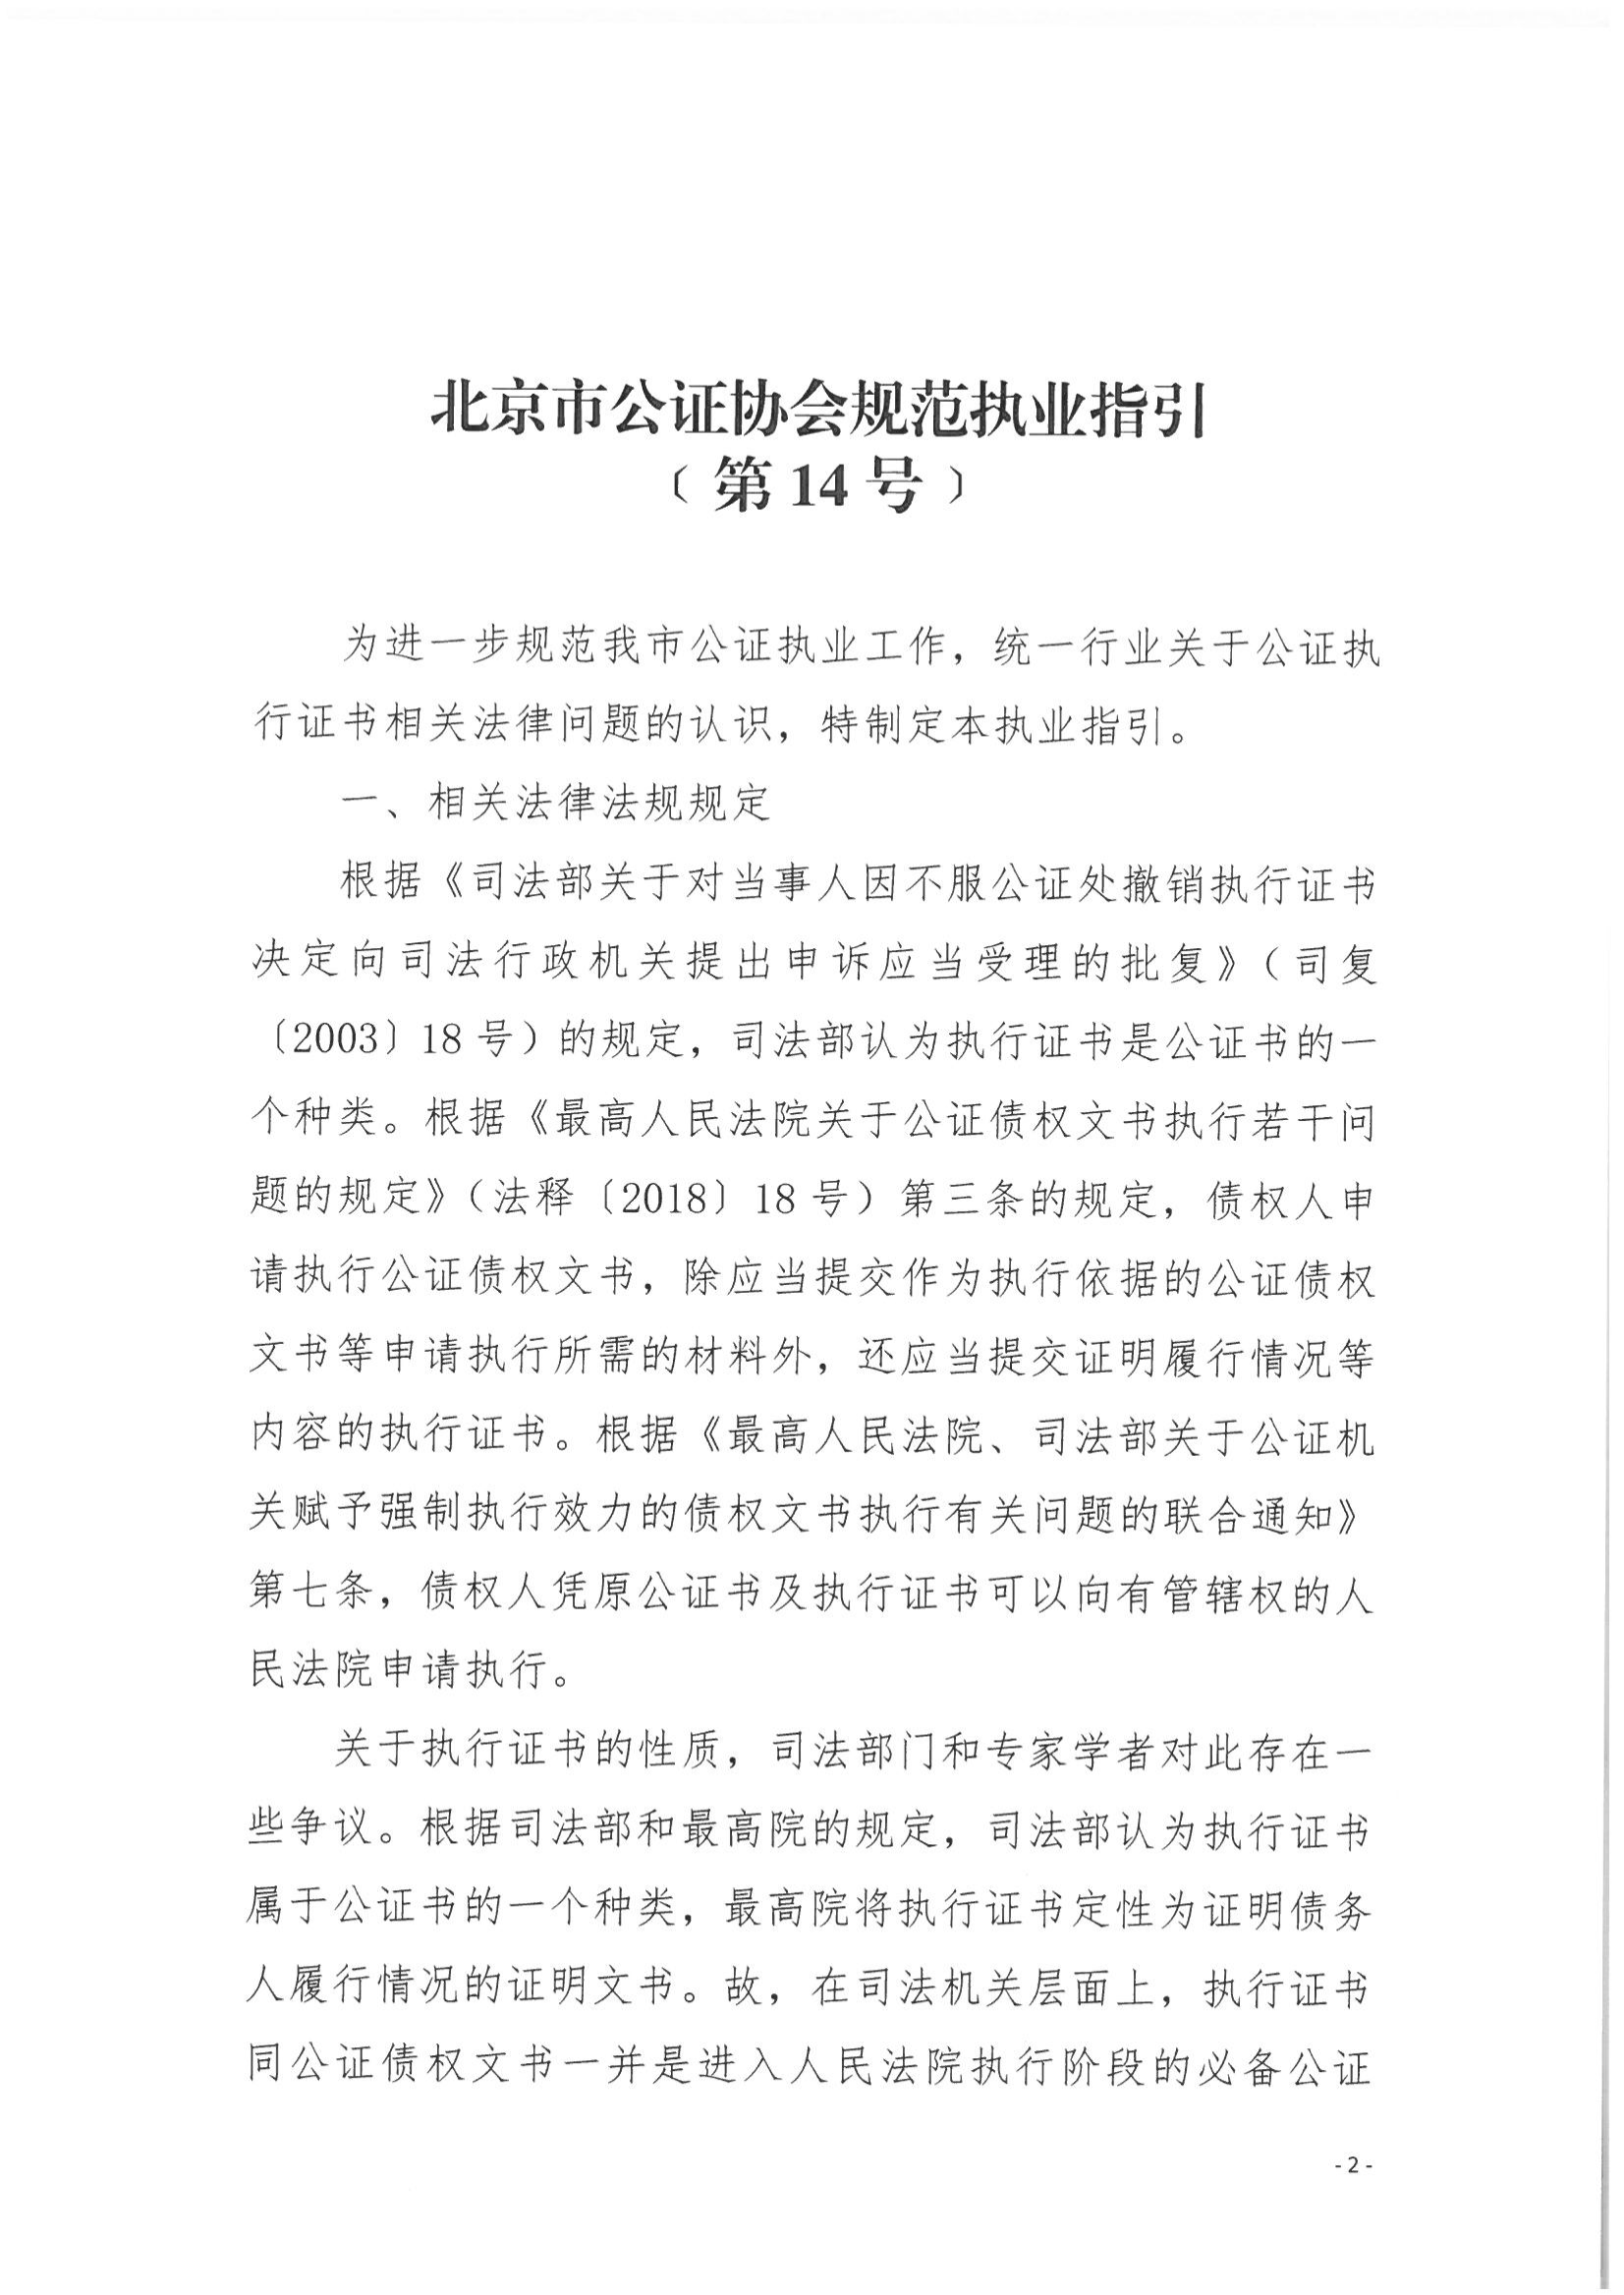 14、北京市公证协会规范执业指引【第14号】（执行证书指引）_01